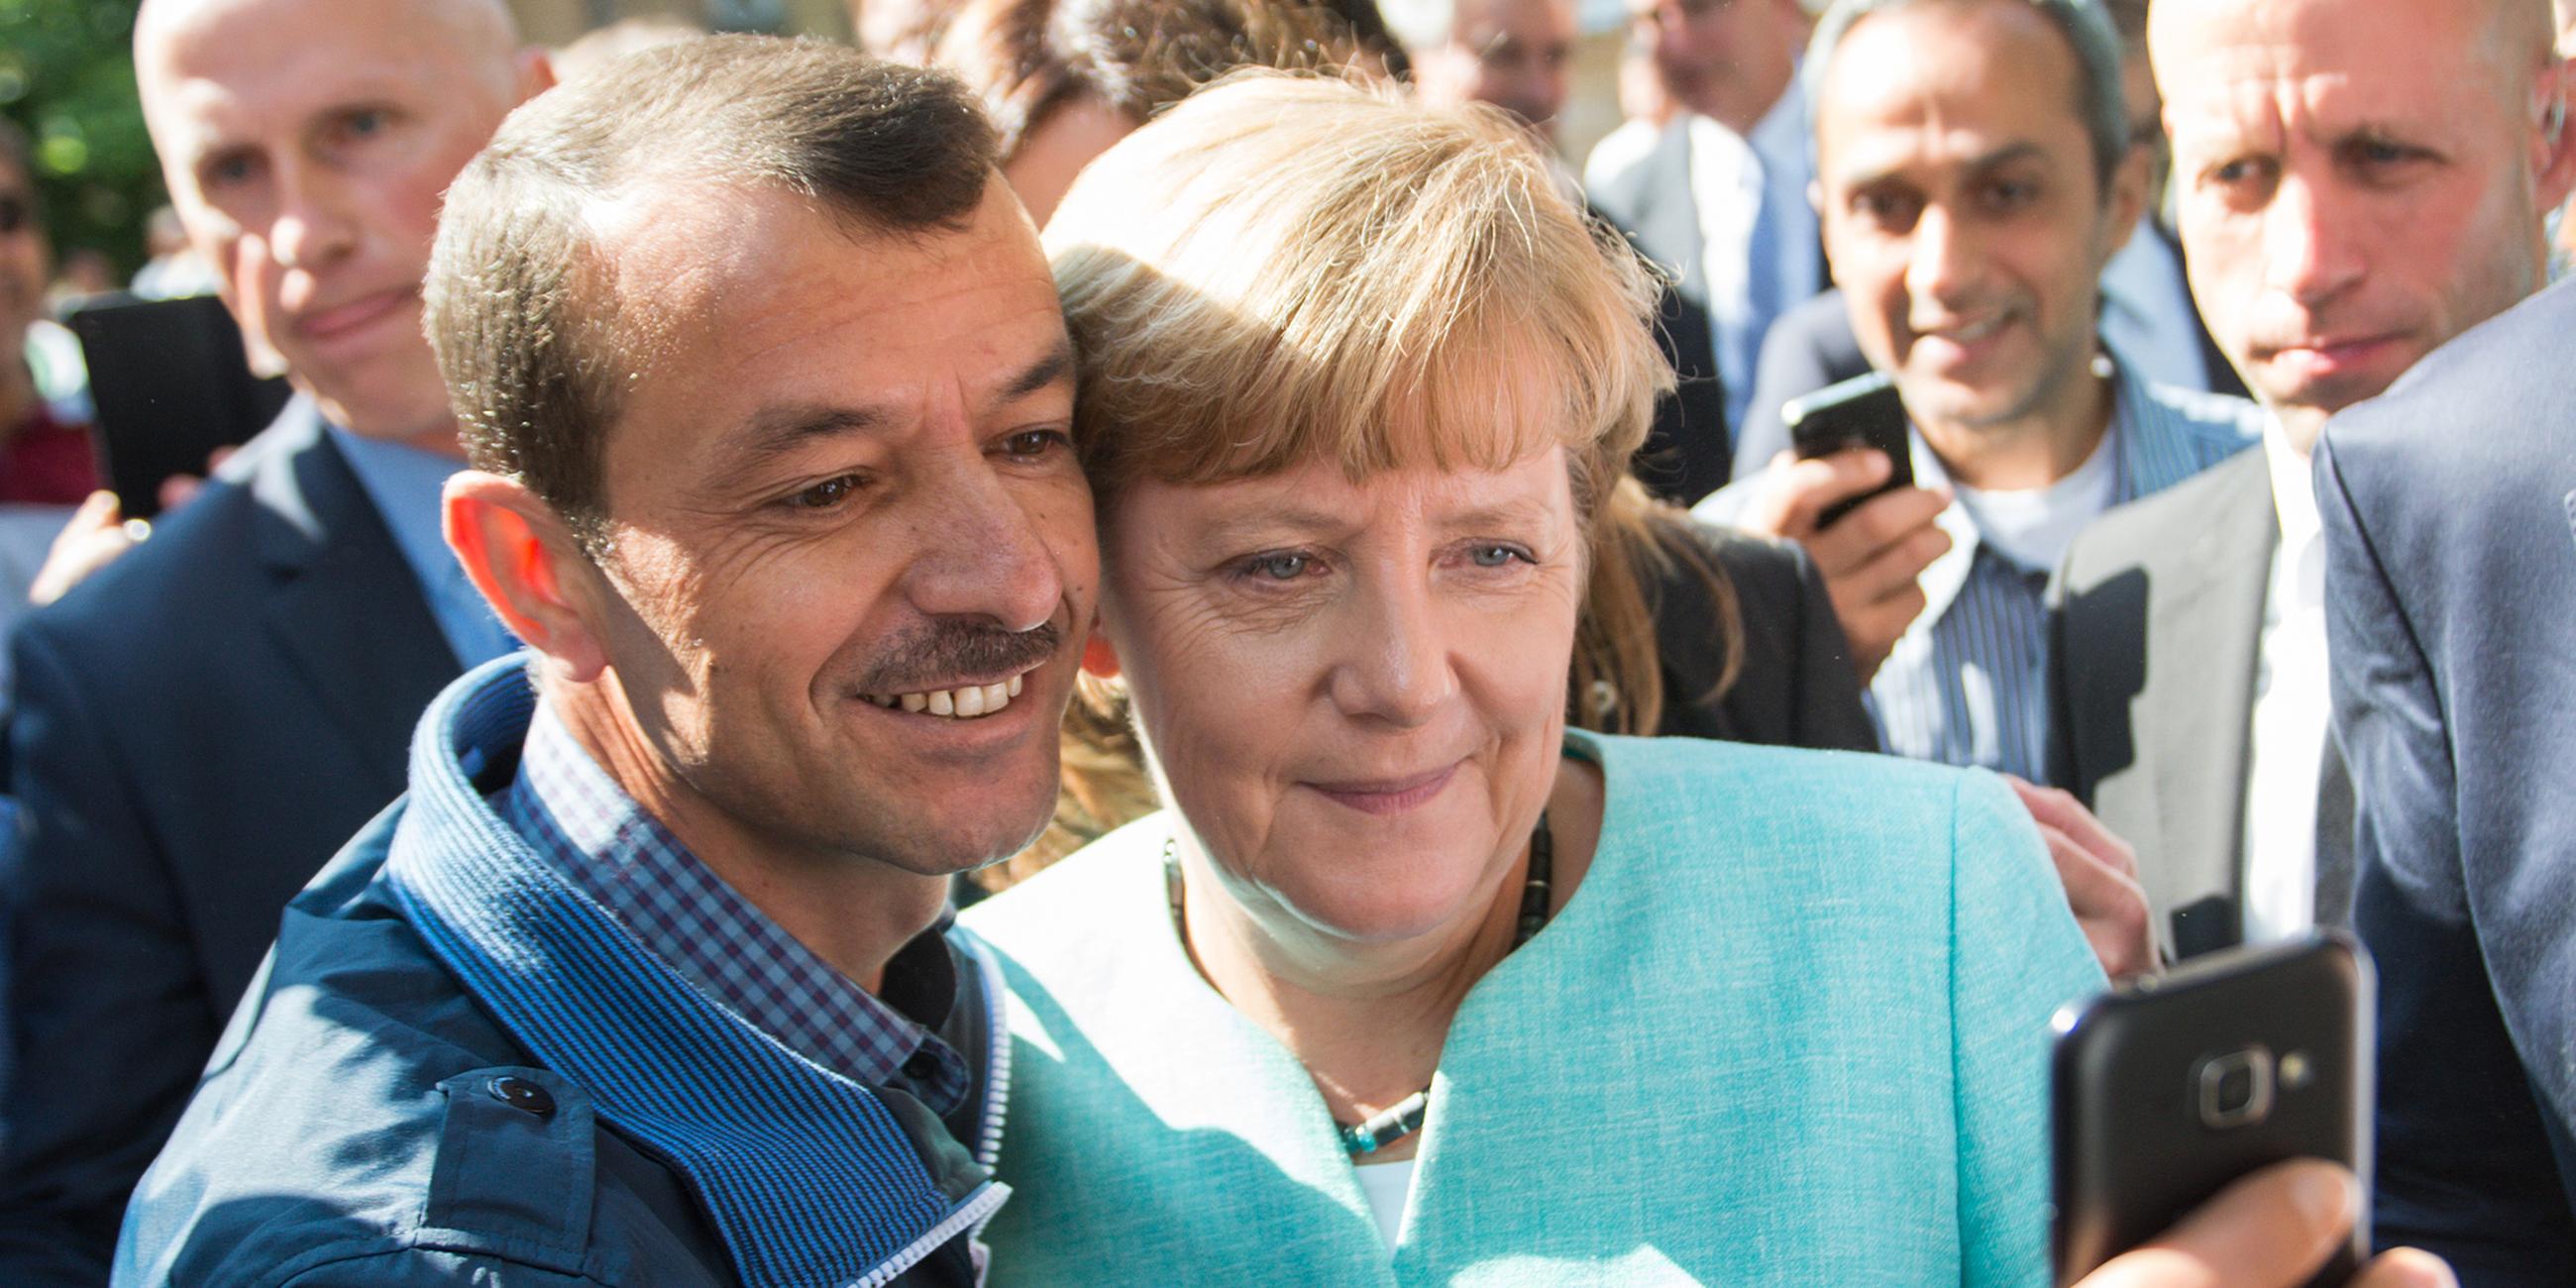 Bundeskanzlerin Angela Merkel lässt sich 2015, nach dem Besuch einer Erstaufnahmeeinrichtung für Asylbewerber, für ein Selfie zusammen mit einem Flüchtling fotografieren.